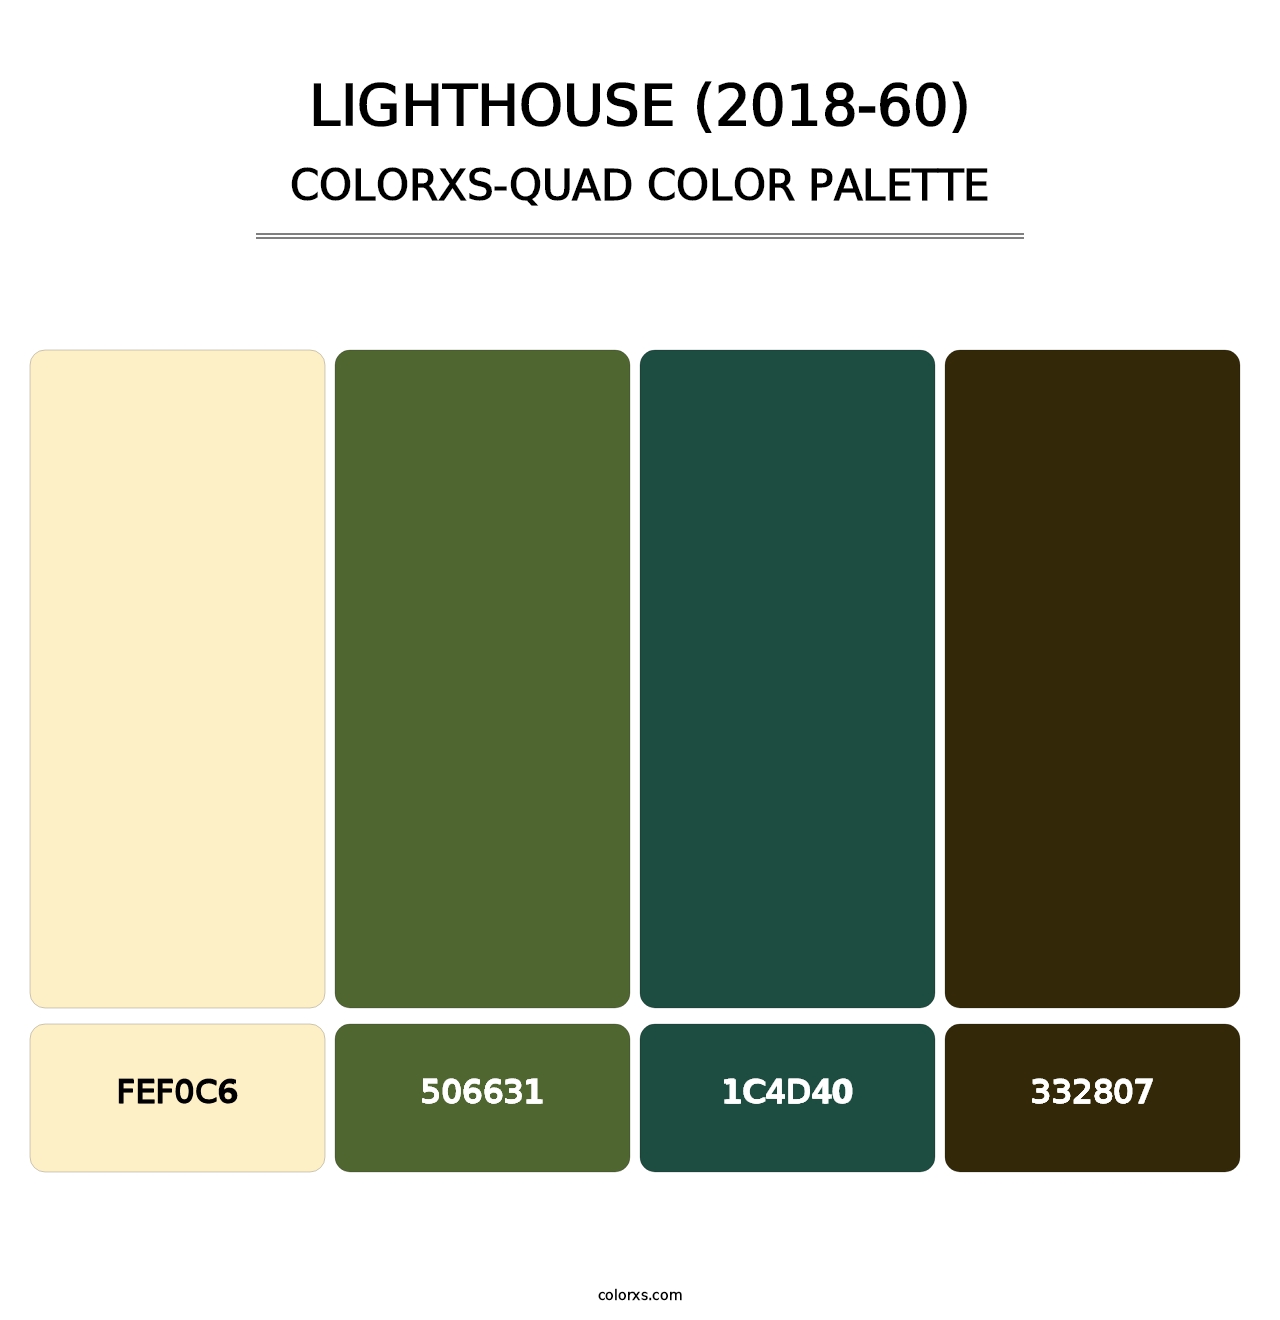 Lighthouse (2018-60) - Colorxs Quad Palette